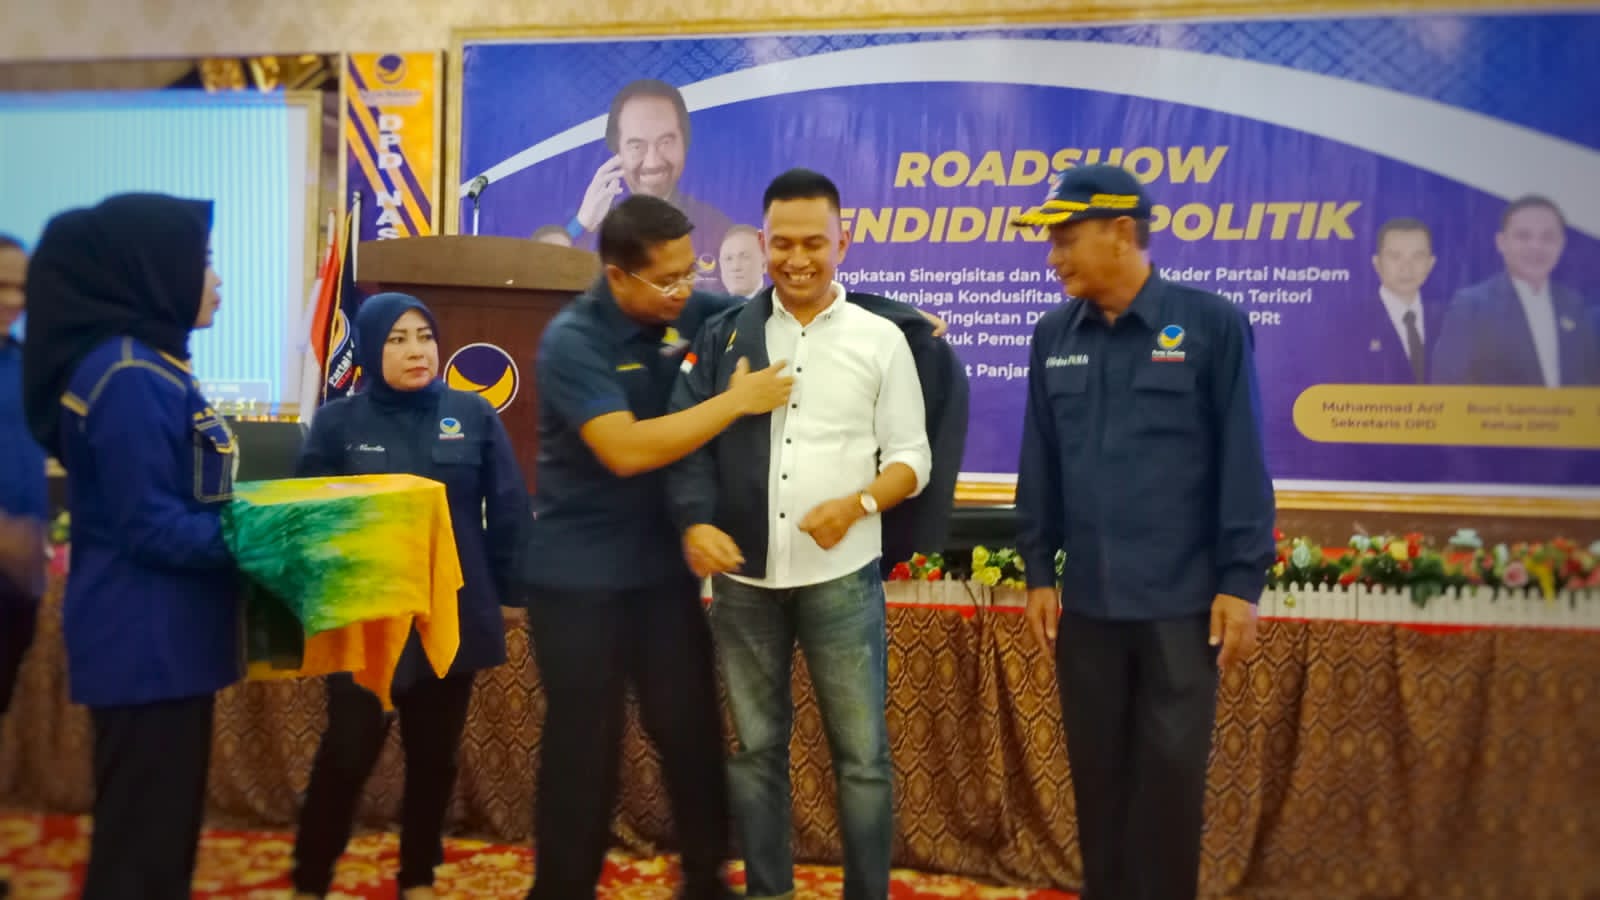 Rosihan resmi bergabung ke NasDem ditandai dengan dipakaikan baju jacket  oleh Sekretaris DPW Partai NasDem Riau Jhony Charles
